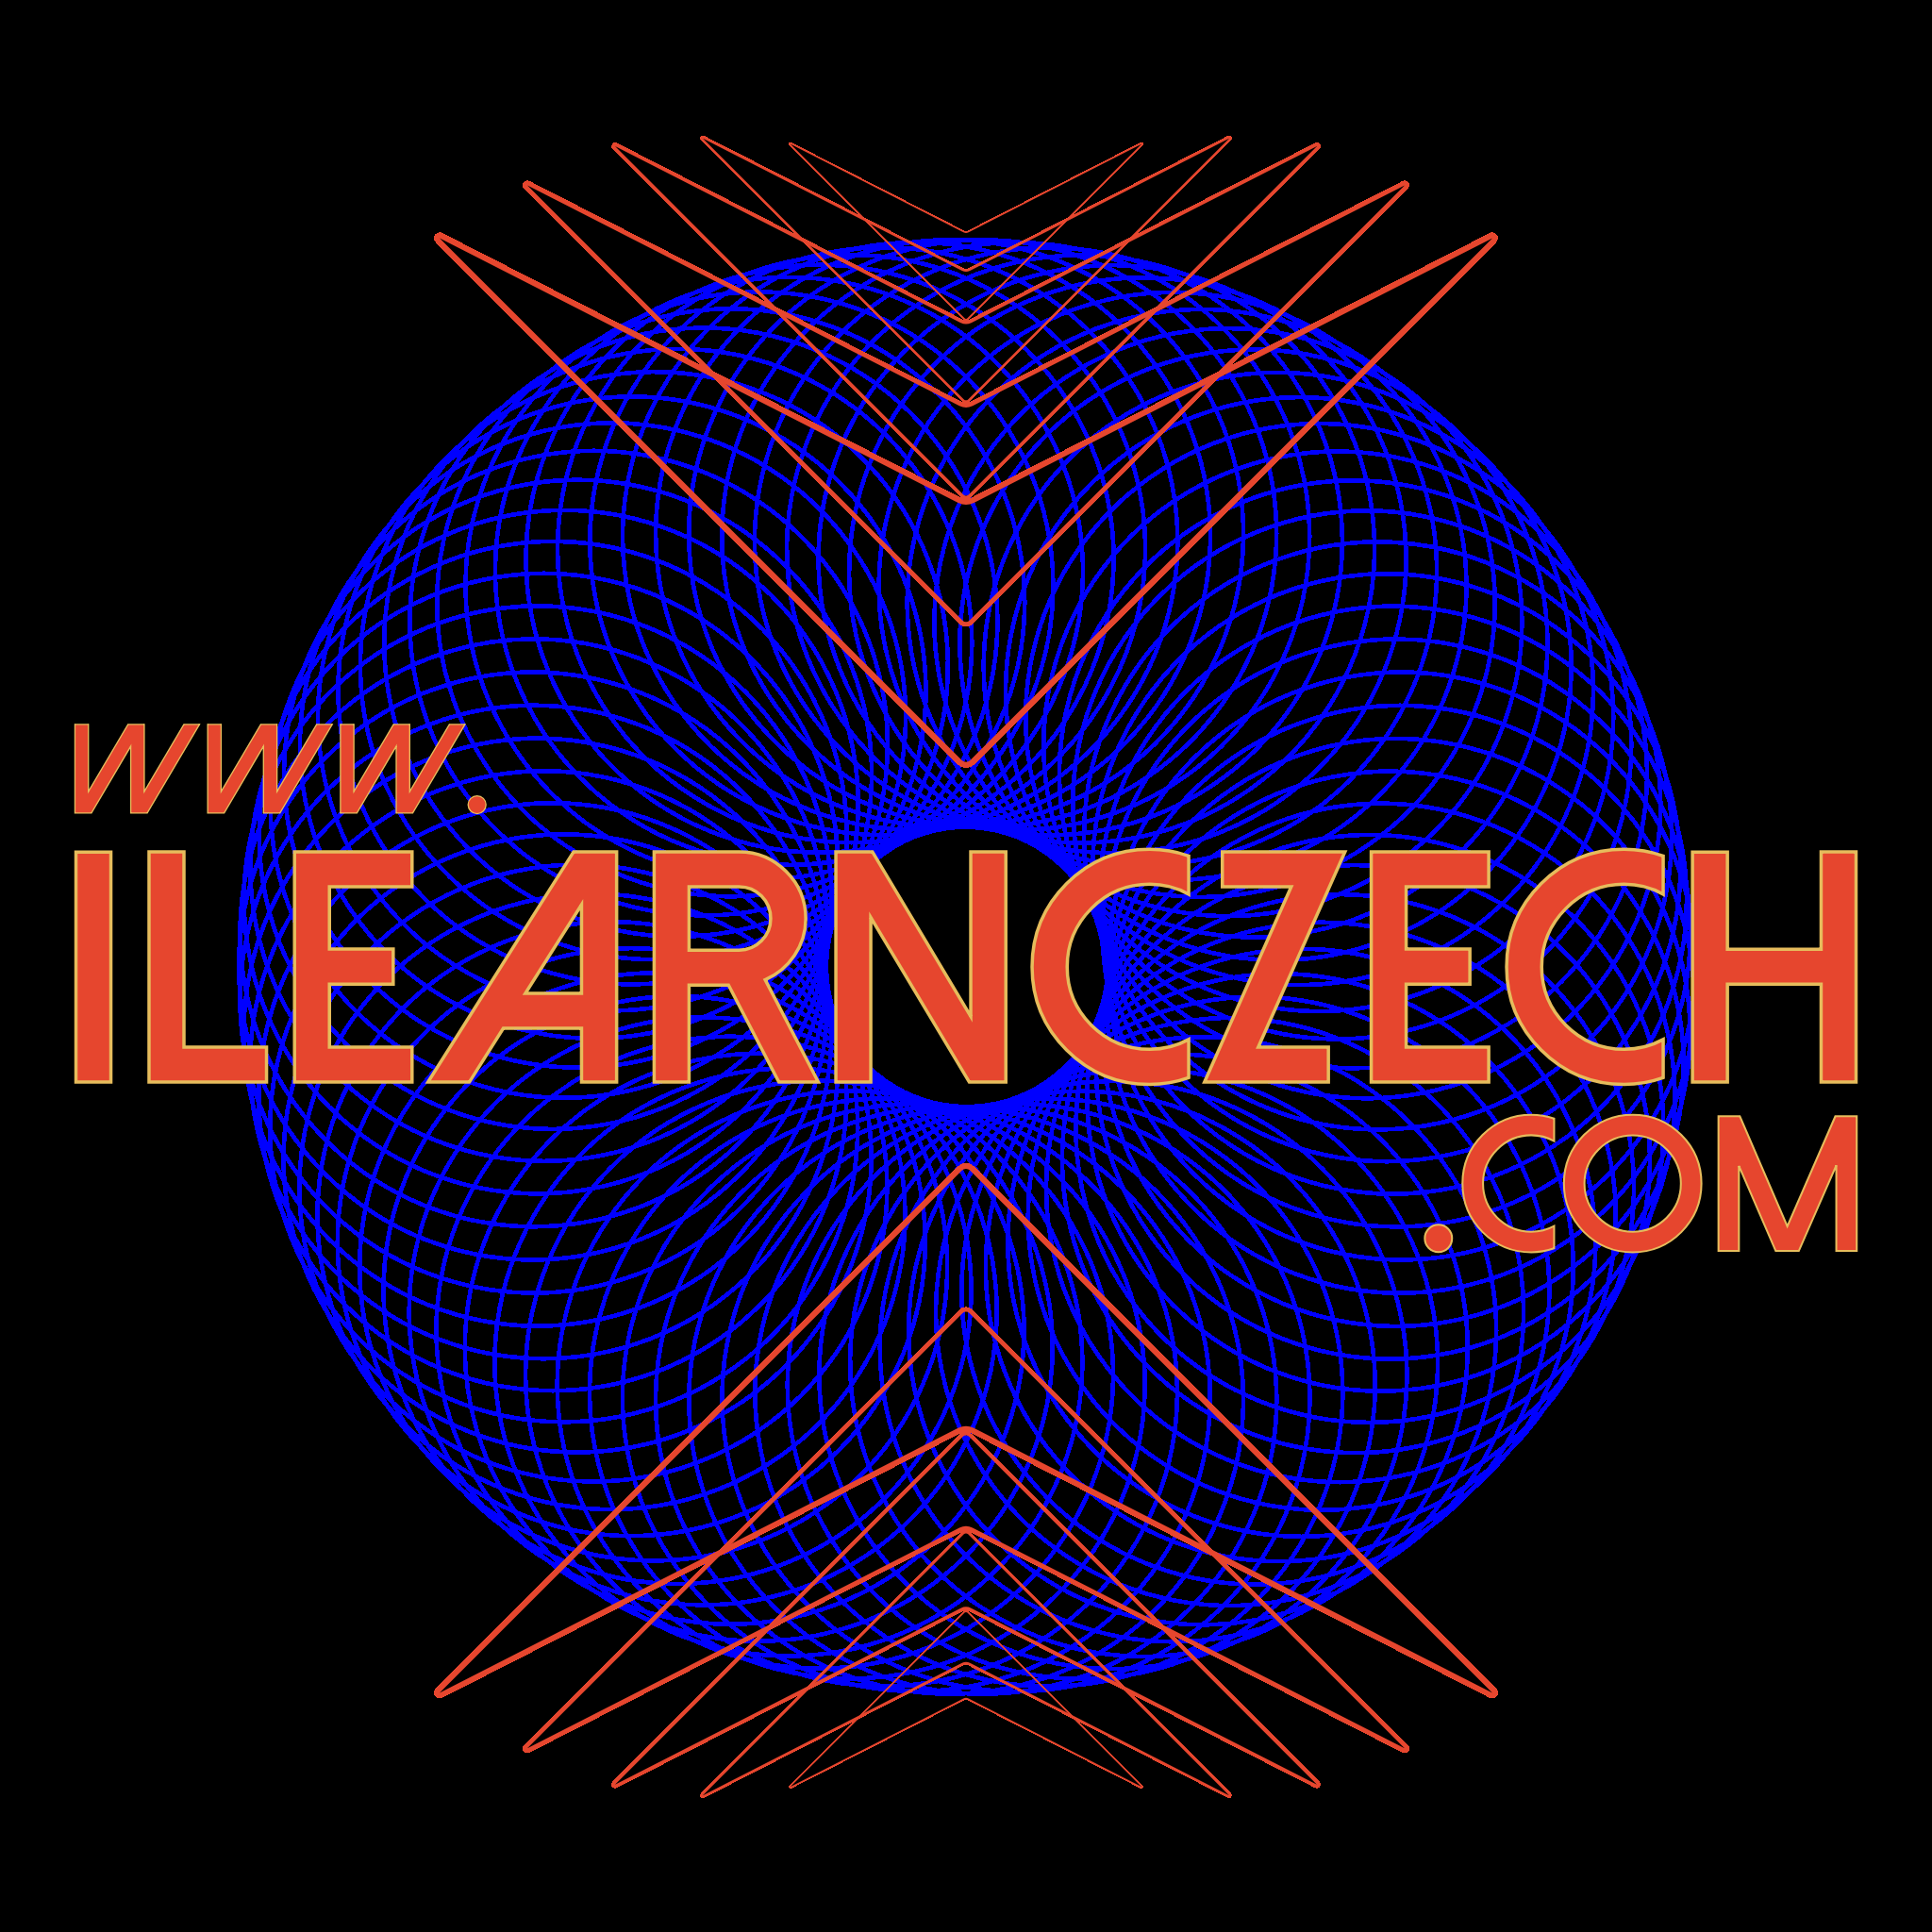 Learn Czech Online for Free